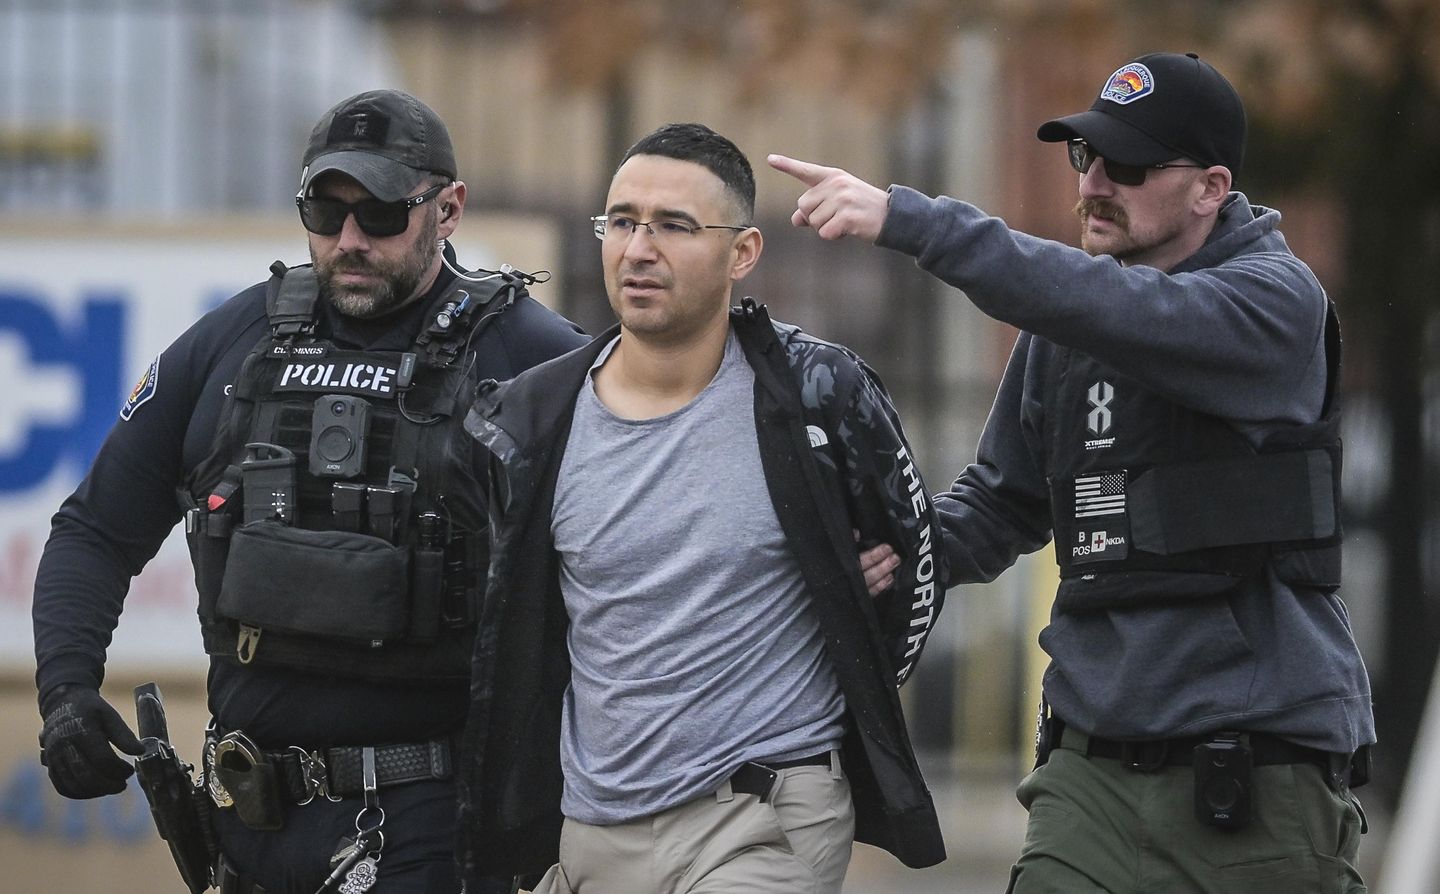 Solomon Pena, mantan kandidat Partai Republik, ditangkap dalam penembakan di rumah anggota parlemen New Mexico